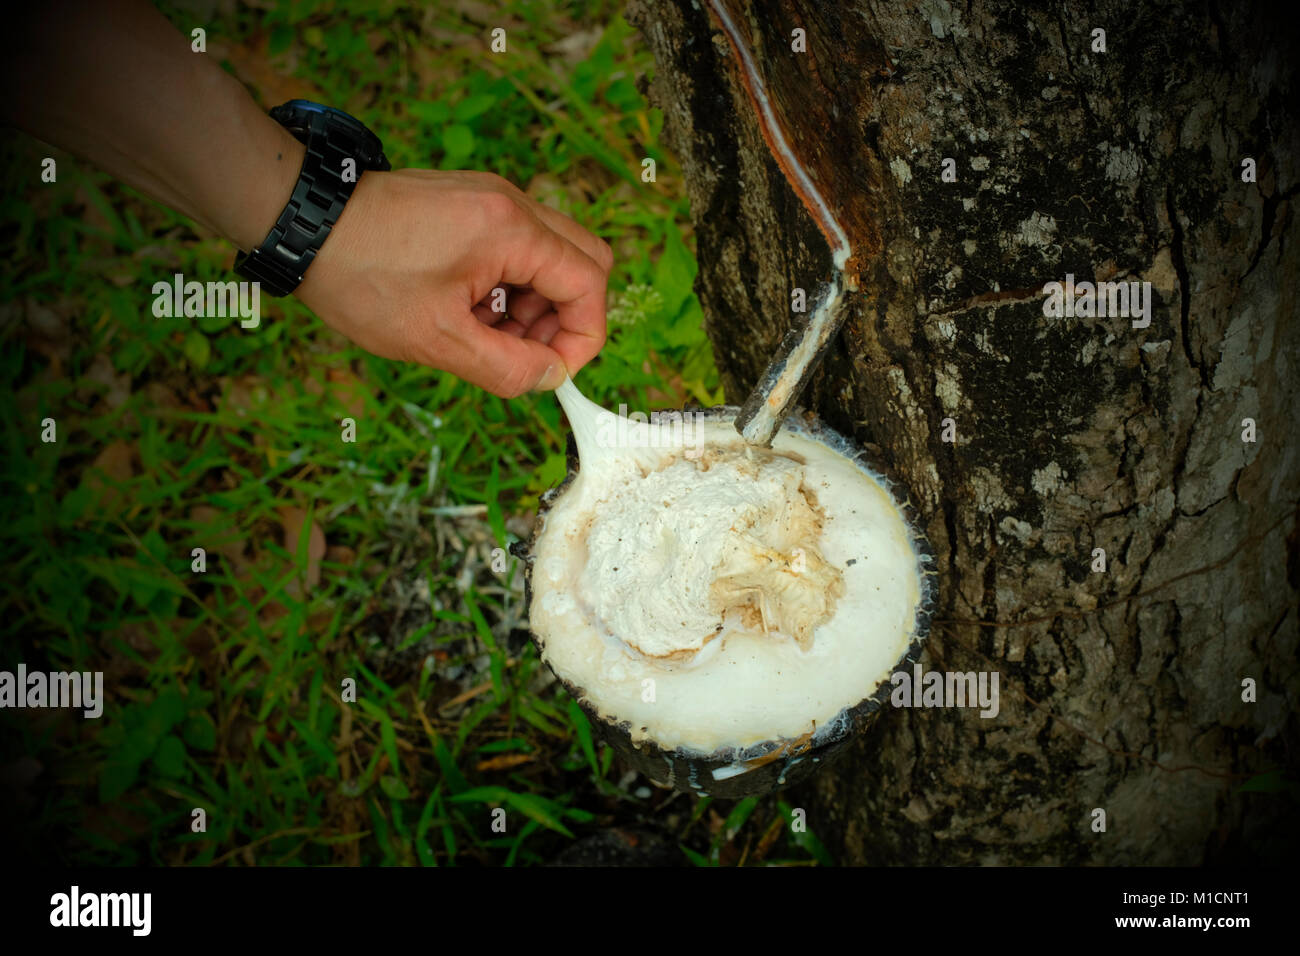 Tippen Gummi von einem gummibaum in einer Kautschukplantage in Koh Yao Noi Insel in Thailand. 20-Jan-2018 Stockfoto